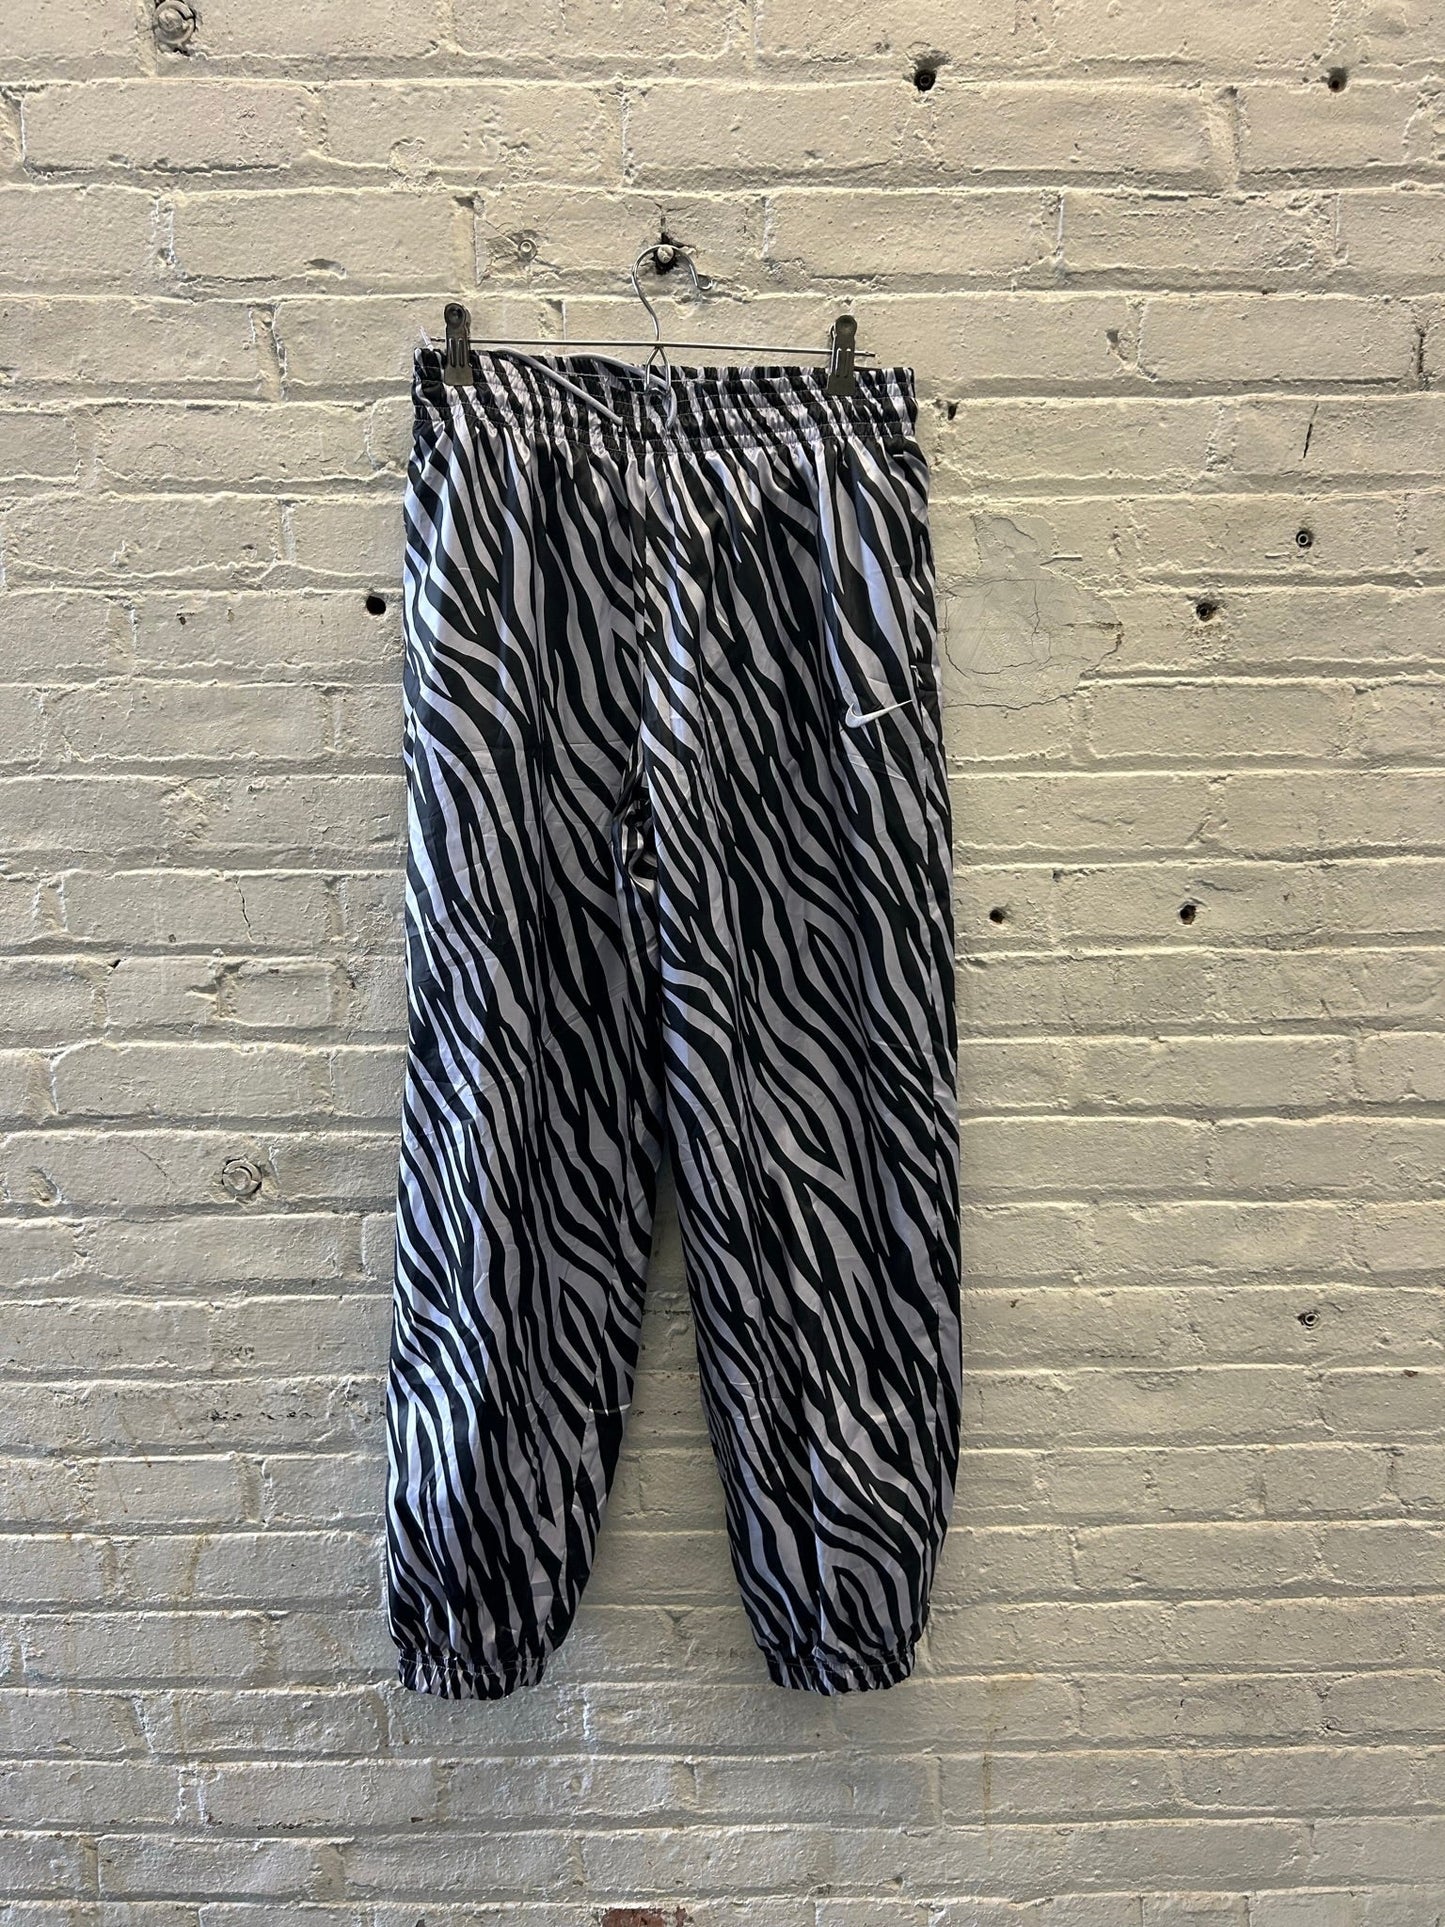 NWT Nike Black and White Zebra Pants